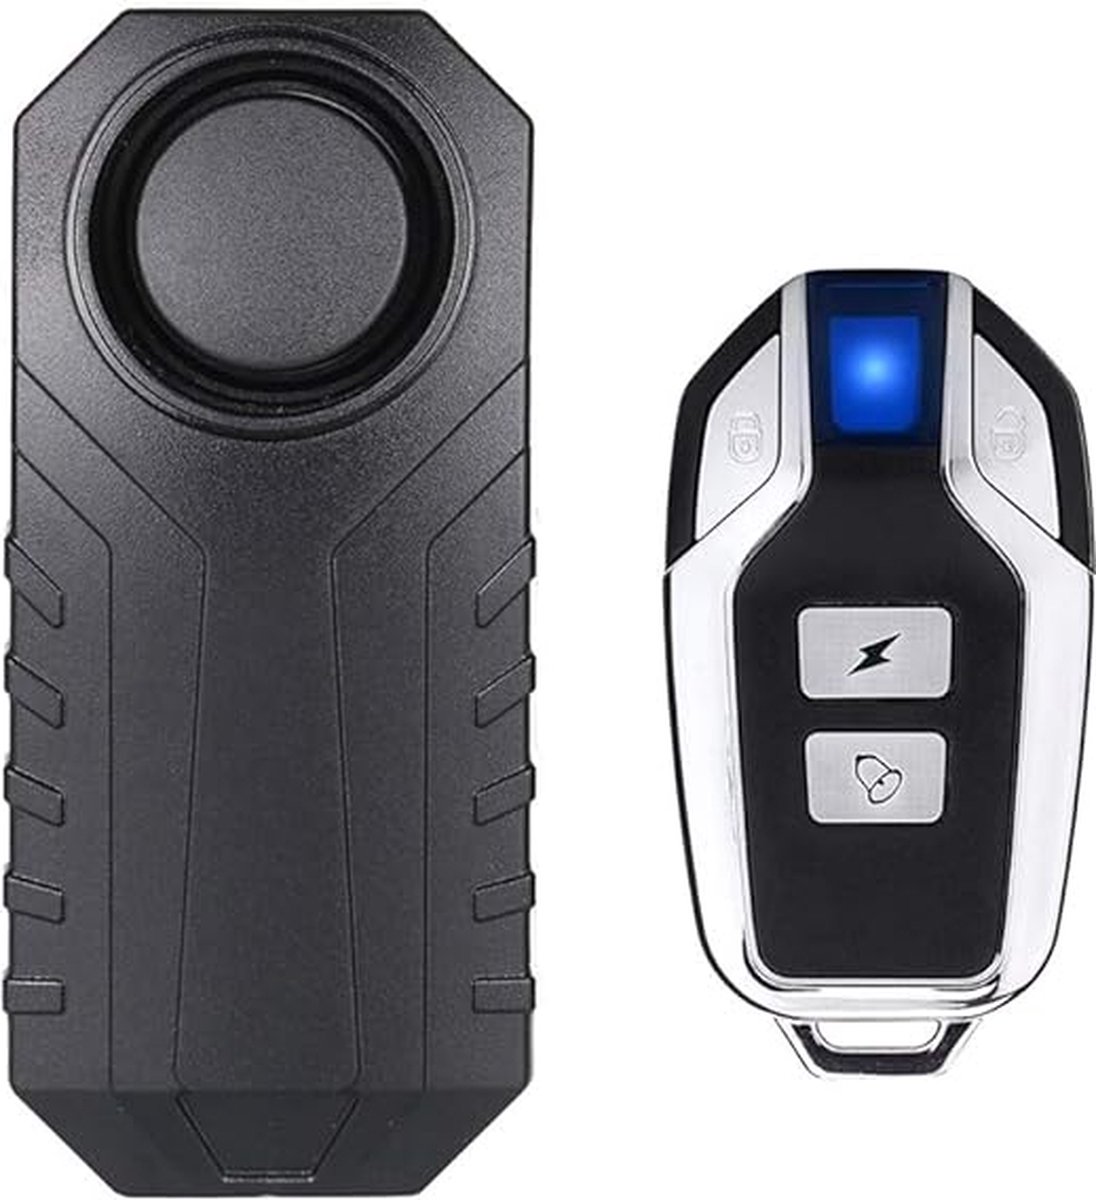 draadloos alarm voor fiets/motorfiets, antidiefstalalarm met afstandsbediening, IP55 waterdicht, 113 dB super luid (zwart)